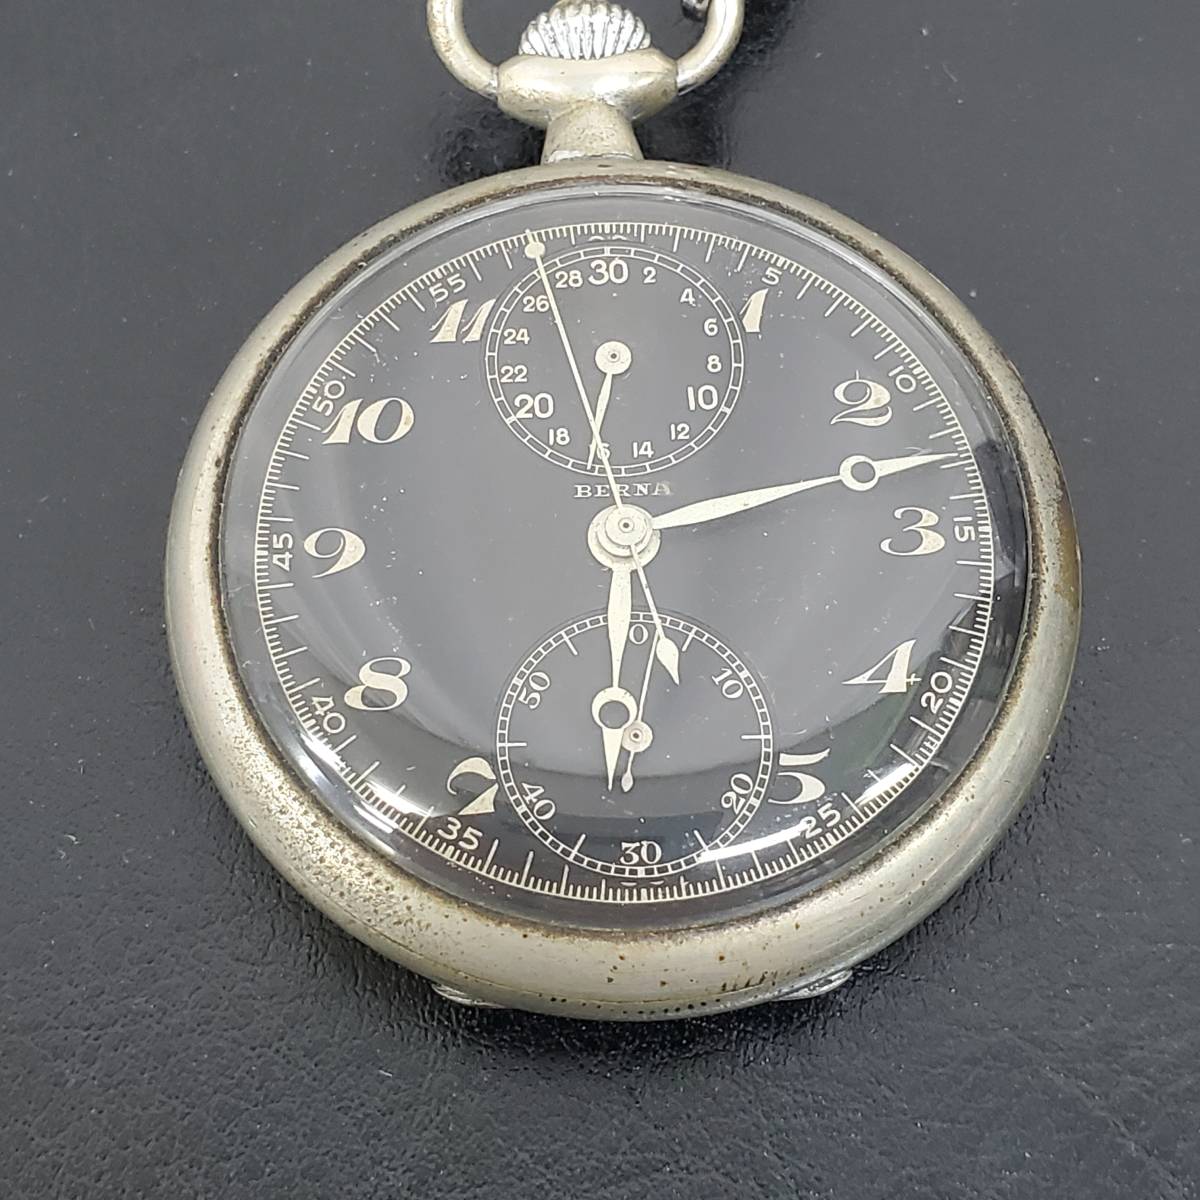 1108-212* редкий BERNAbe luna карманные часы хронограф механический завод античный часы работа товар работоспособность не проверялась Junk подлинная вещь 